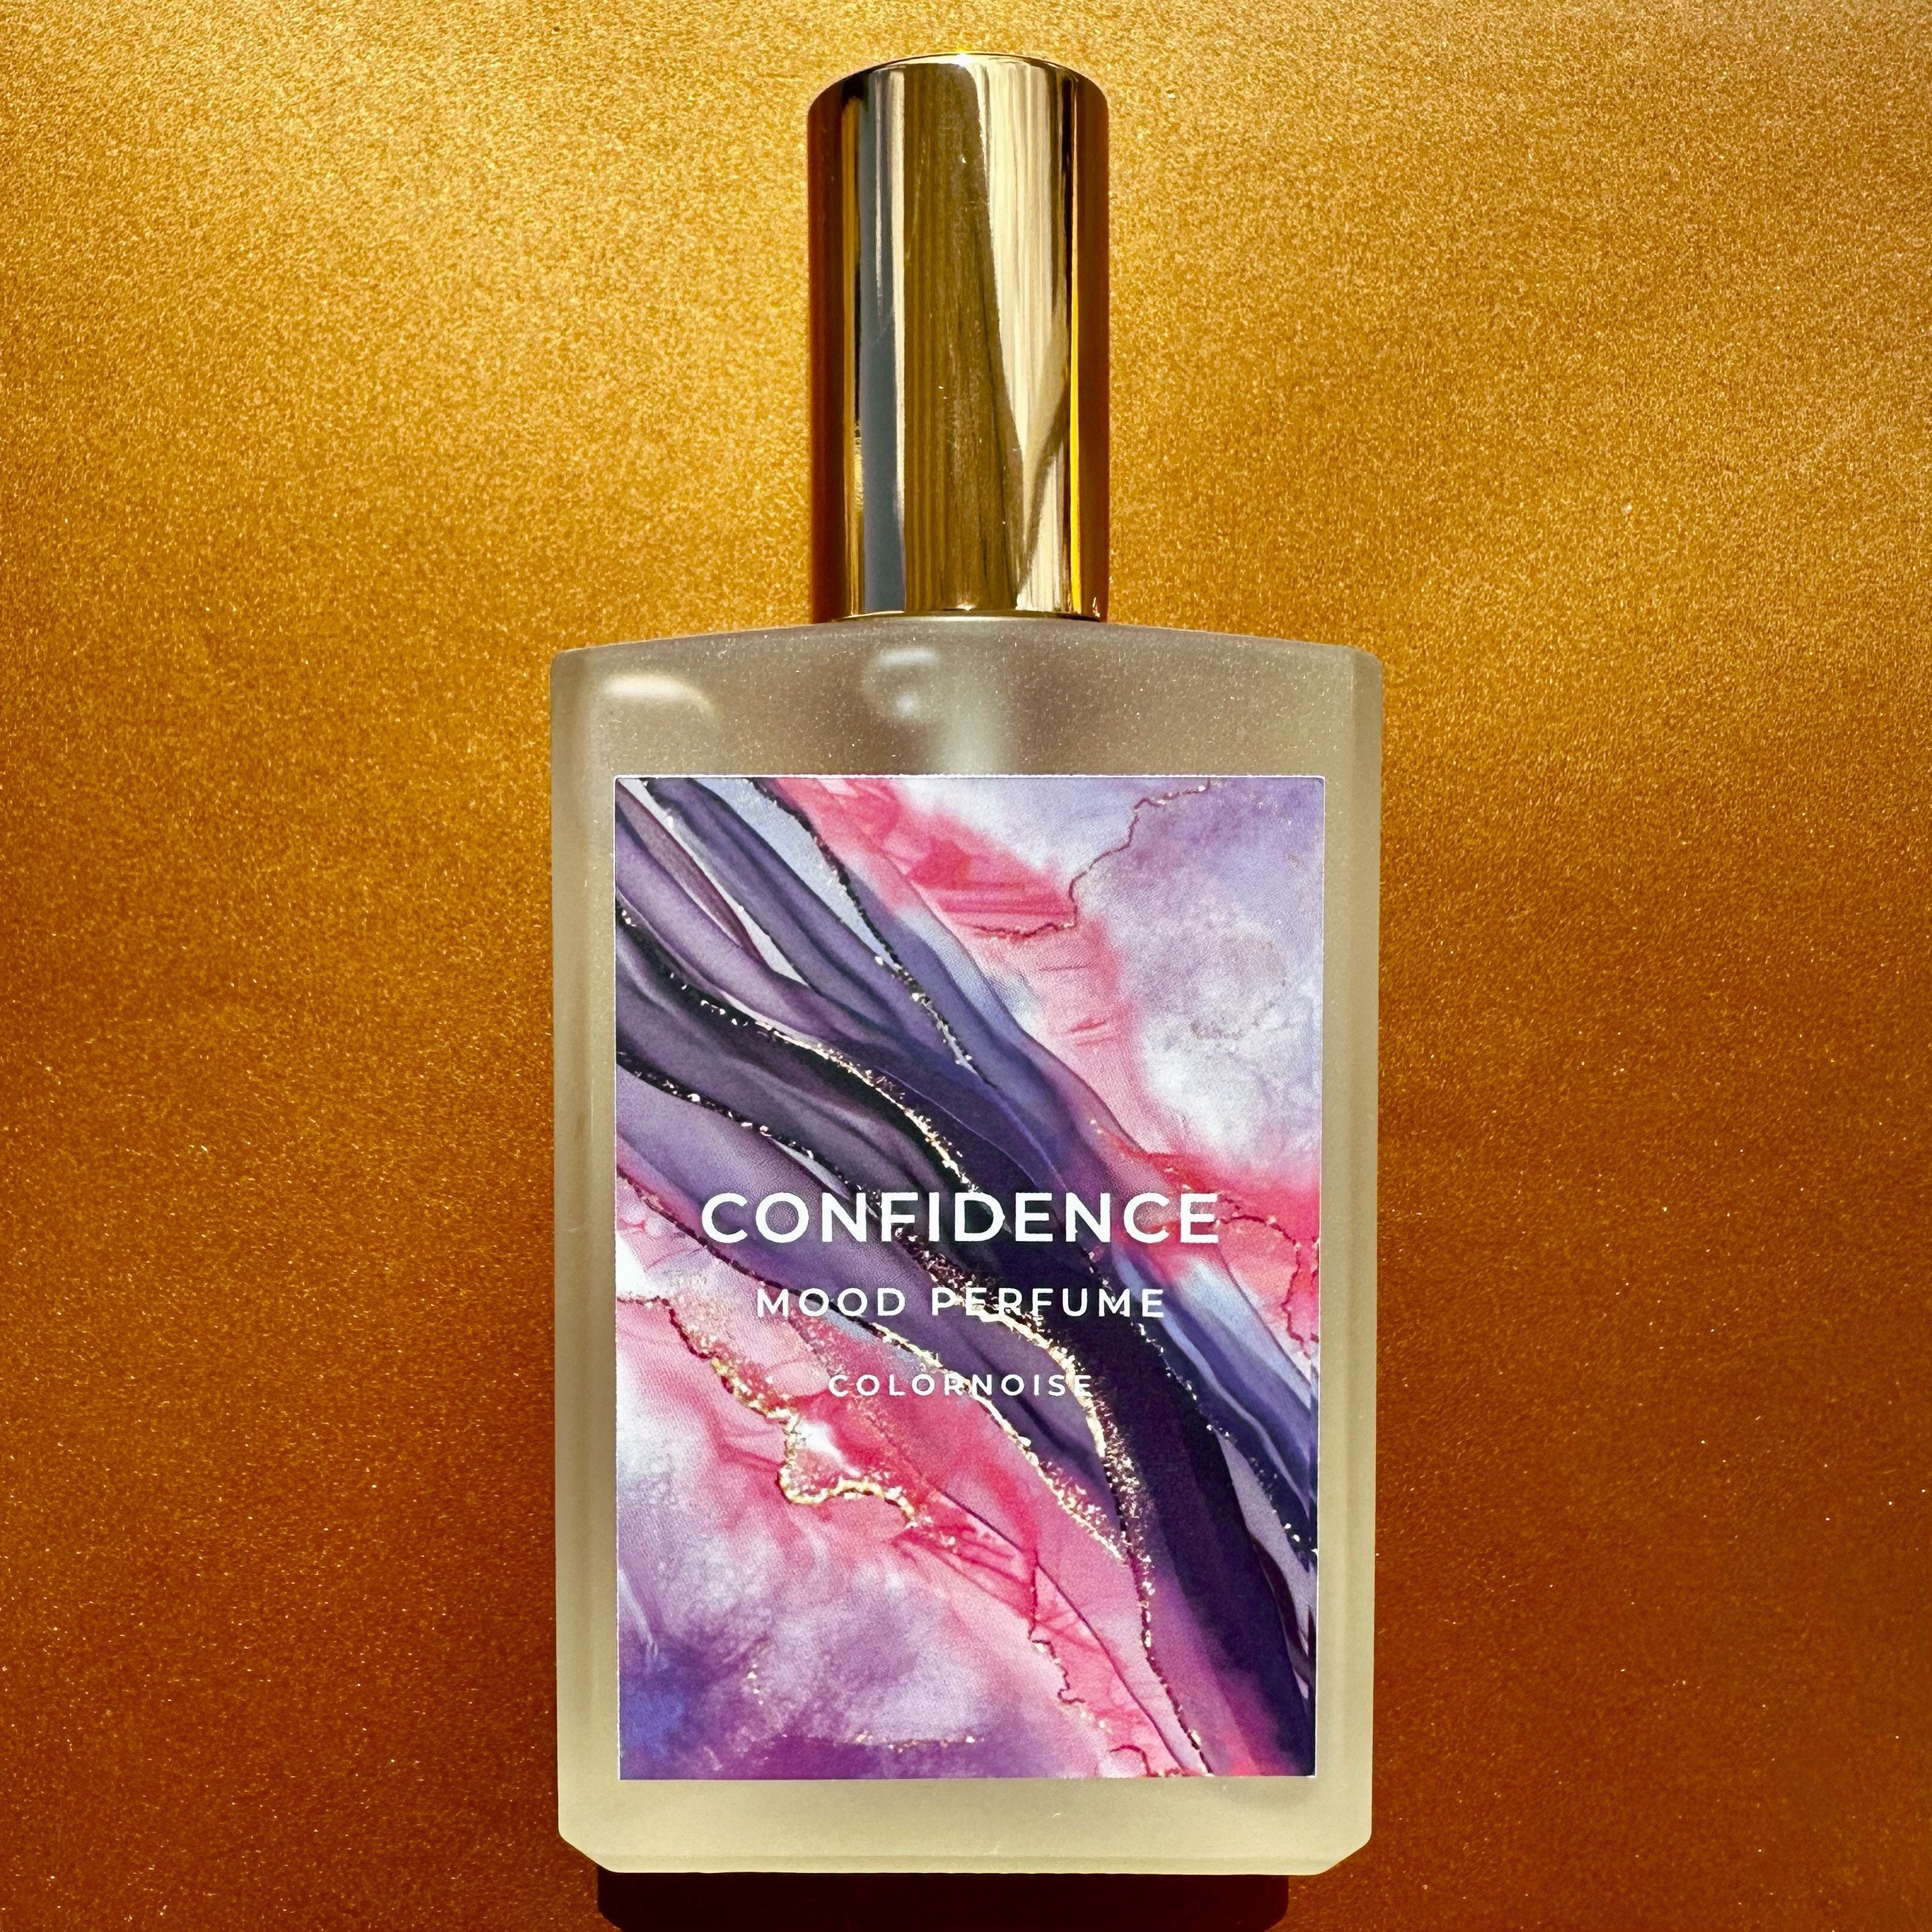 CONFIDENCE. Pheromone Perfume